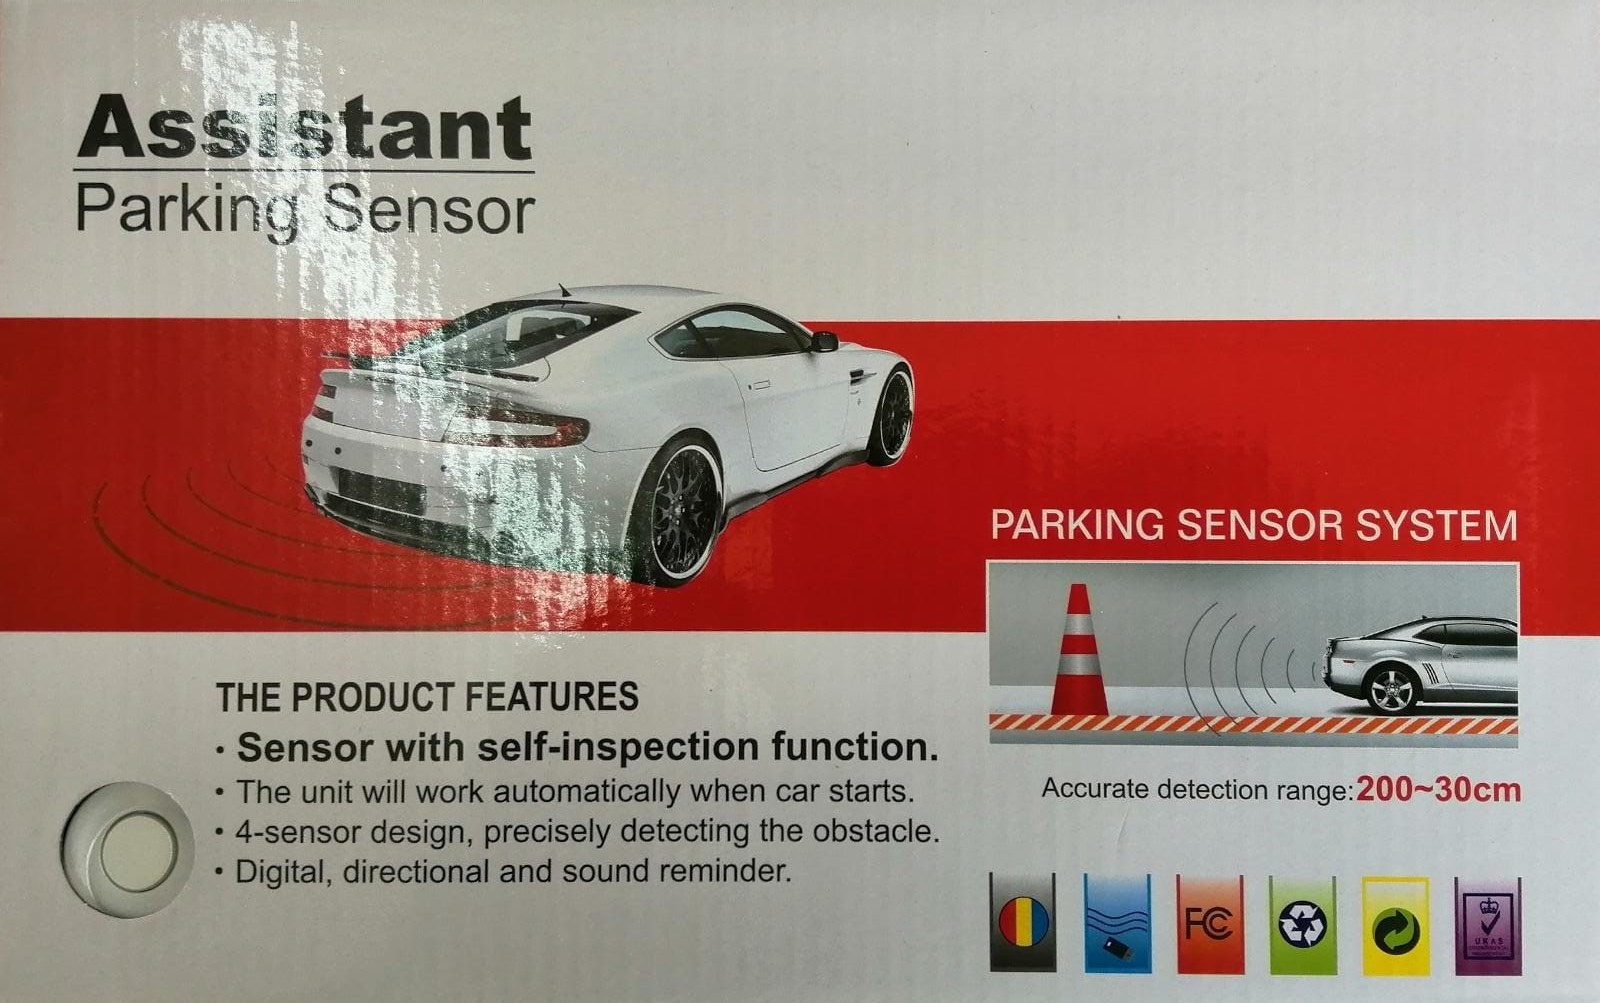 Assistant Parking Sensor (Parking Sensor System)